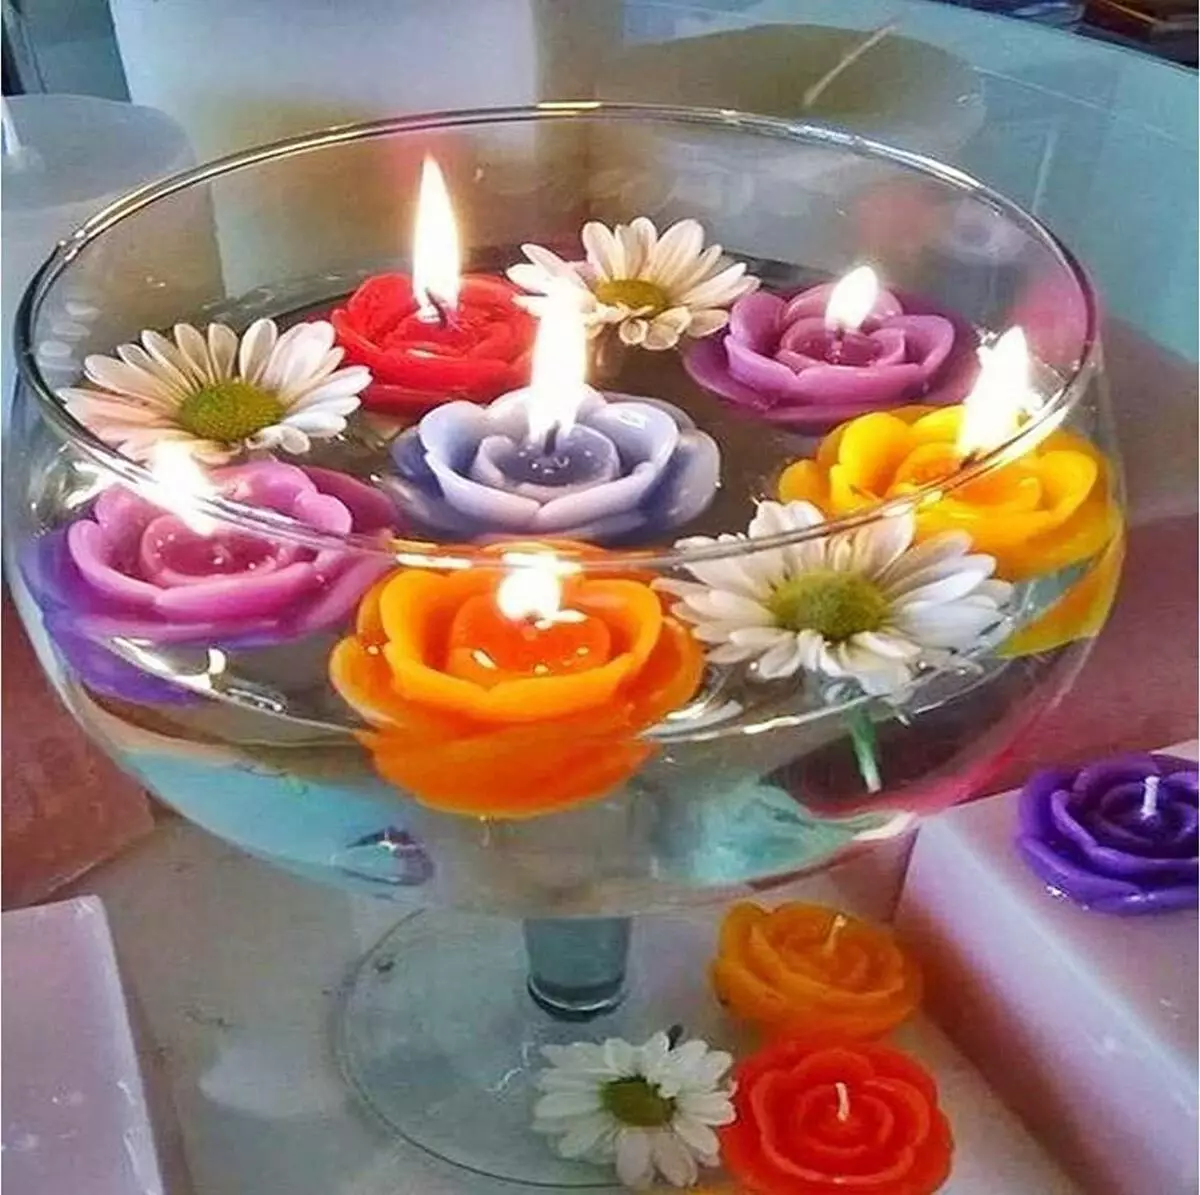 الشموع العائمة (32 صورة): حجم (قطر) من الشموع في شمعدان. كم يحترق في الماء في إناء؟ كيفية جعل يديك؟ كيف تستعمل؟ 20834_25